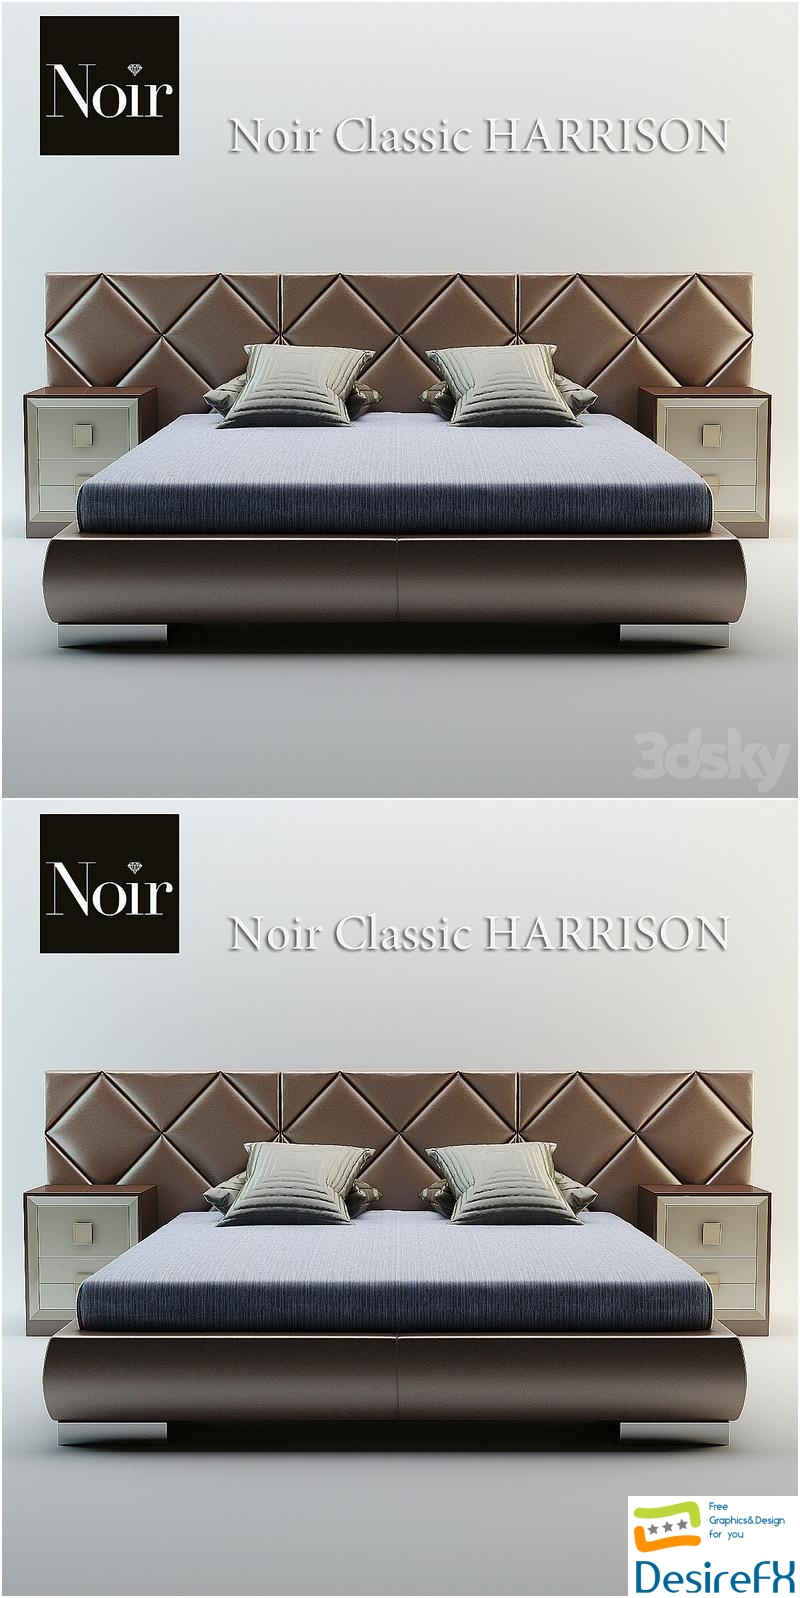 Noir Classic Harrison 3D Model